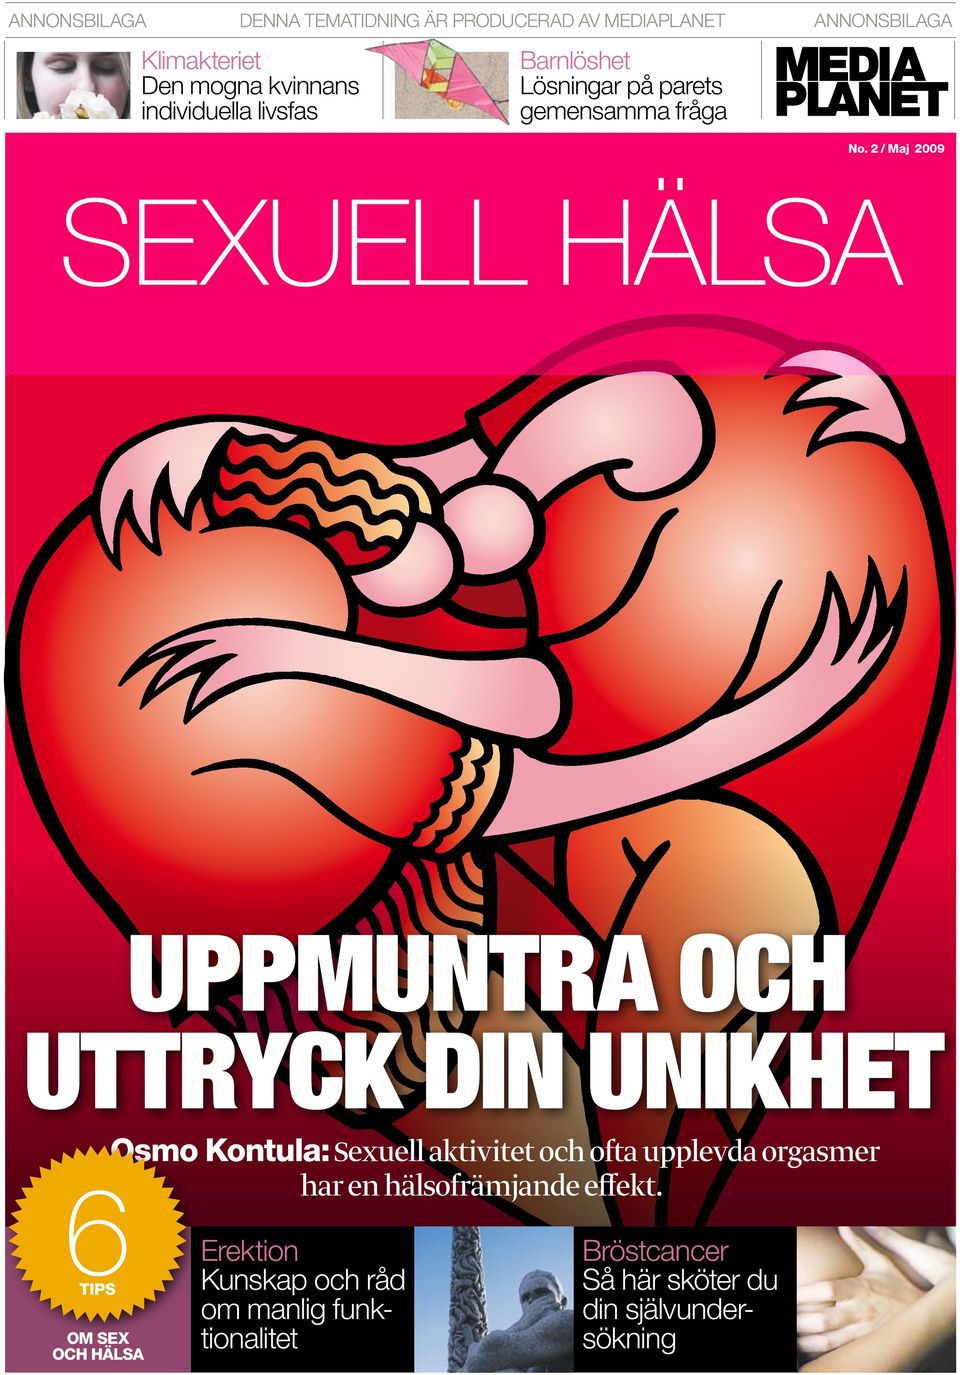 2 / Maj 2009 SEXUELL HÄLSA uppmuntra och uttryck din unikhet Osmo Kontula: Sexuell aktivitet och ofta upplevda